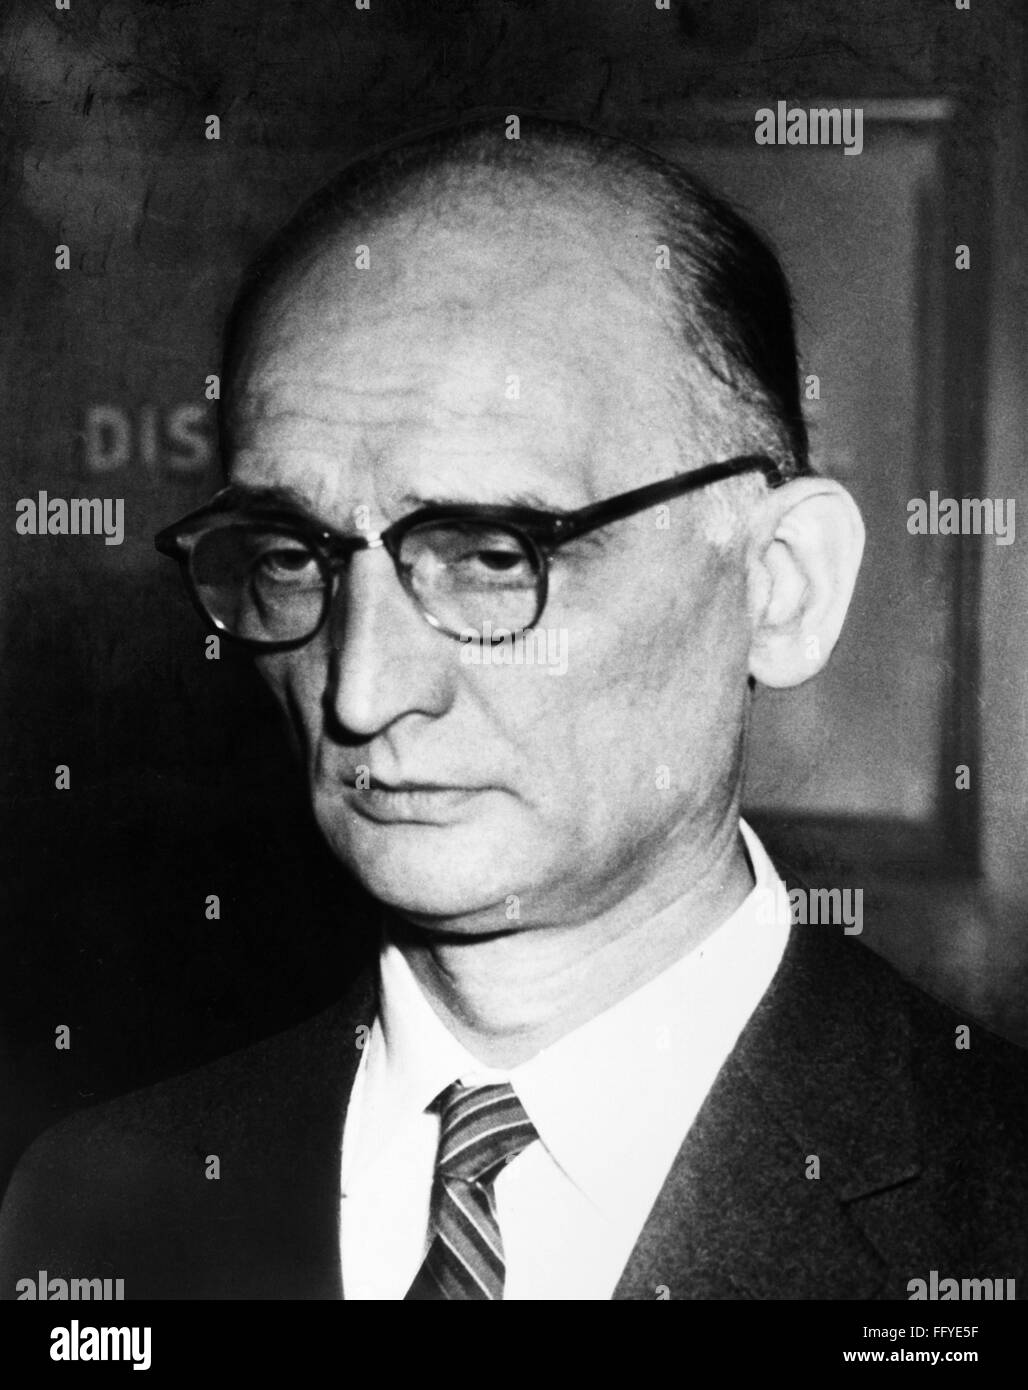 RUDOLPH ABEL (1903-1971). /nAlias of Vilyam Fisher, a Soviet spy. Abel ...